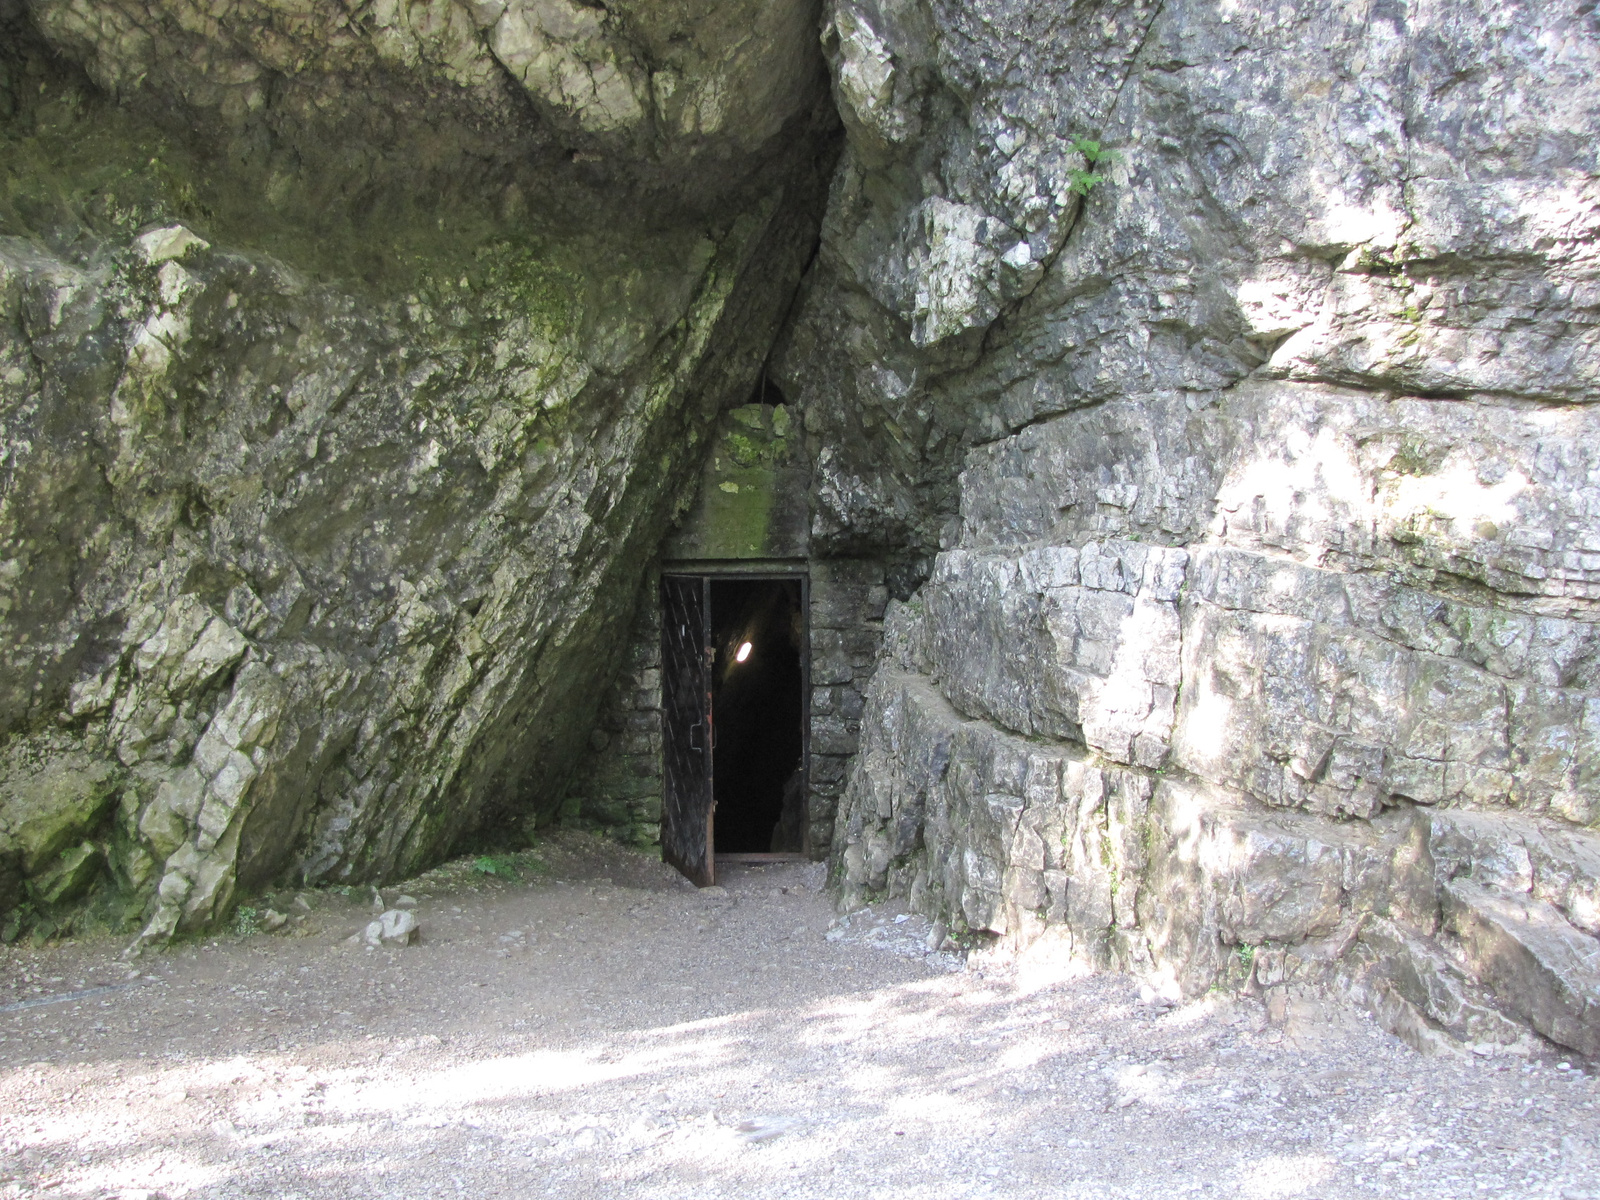 Tátra Nemzeti Park, Dolina Kościeliska, a Mroźna barlang kijárat